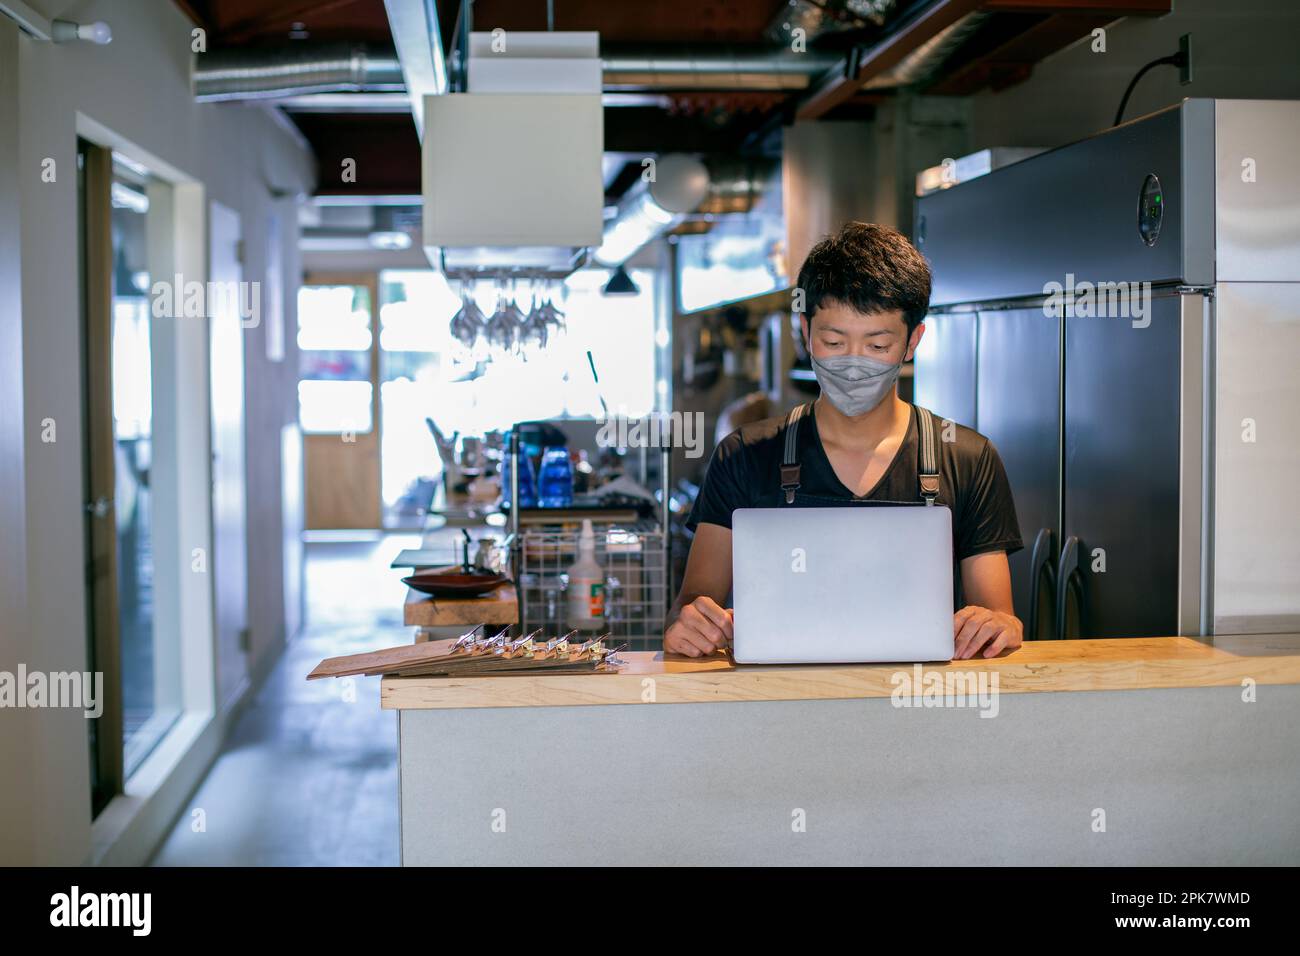 Un homme dans un masque facial dans une cuisine de restaurant, utilisant un ordinateur portable, le propriétaire ou le directeur. Banque D'Images